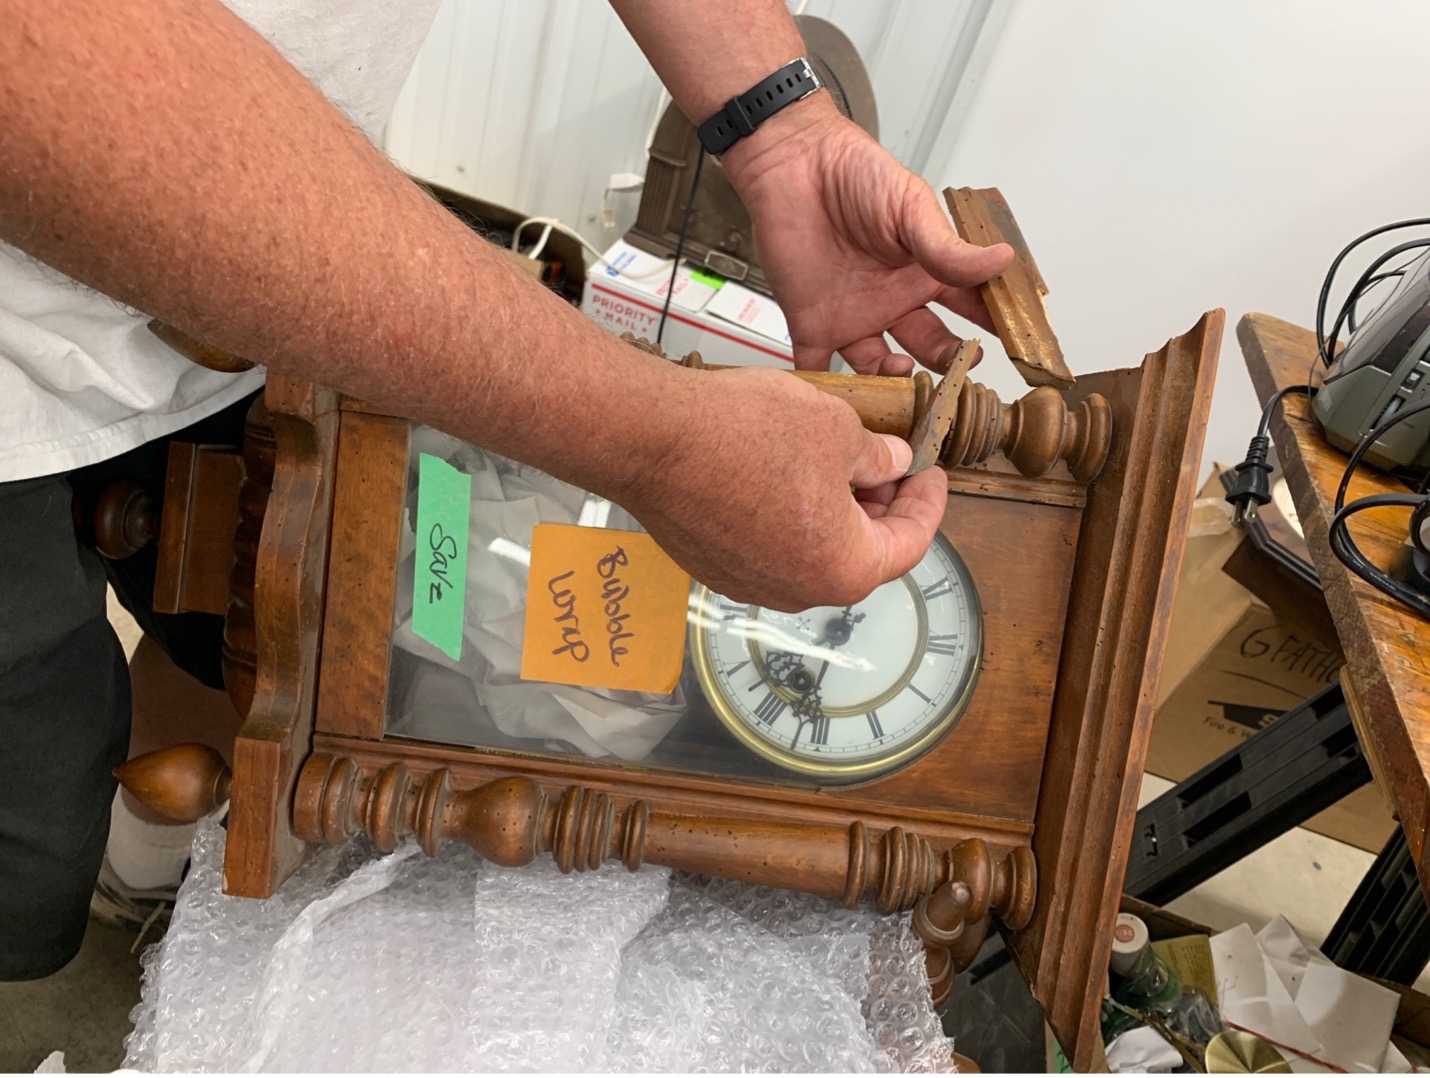 Broken antique clock due to poor packing